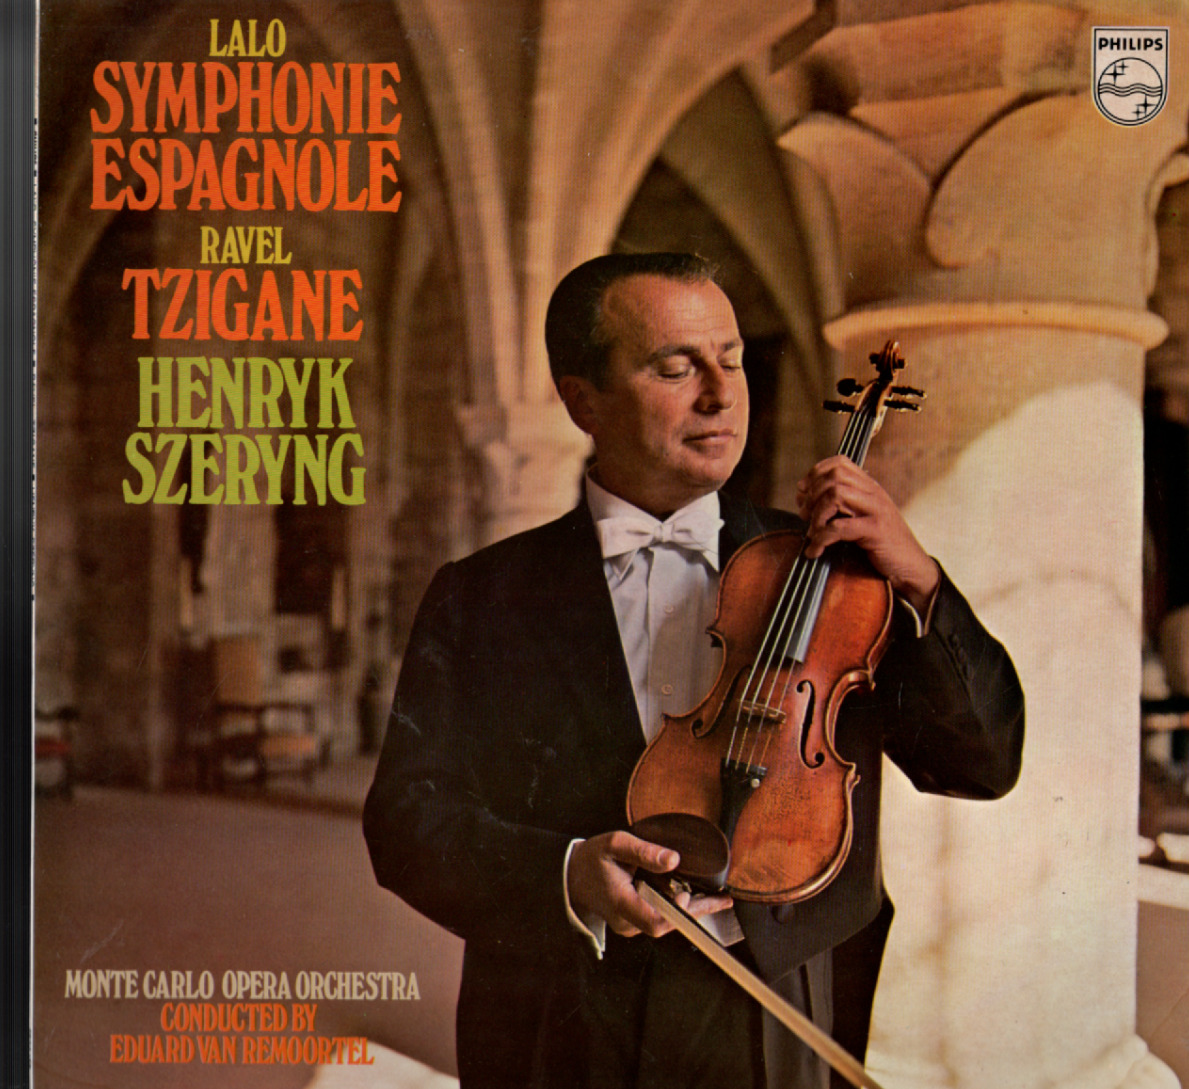 Lalo Symphonie Espagnole Ravel Tzigane Henryk Szeryng - Eduard Van Remoortel